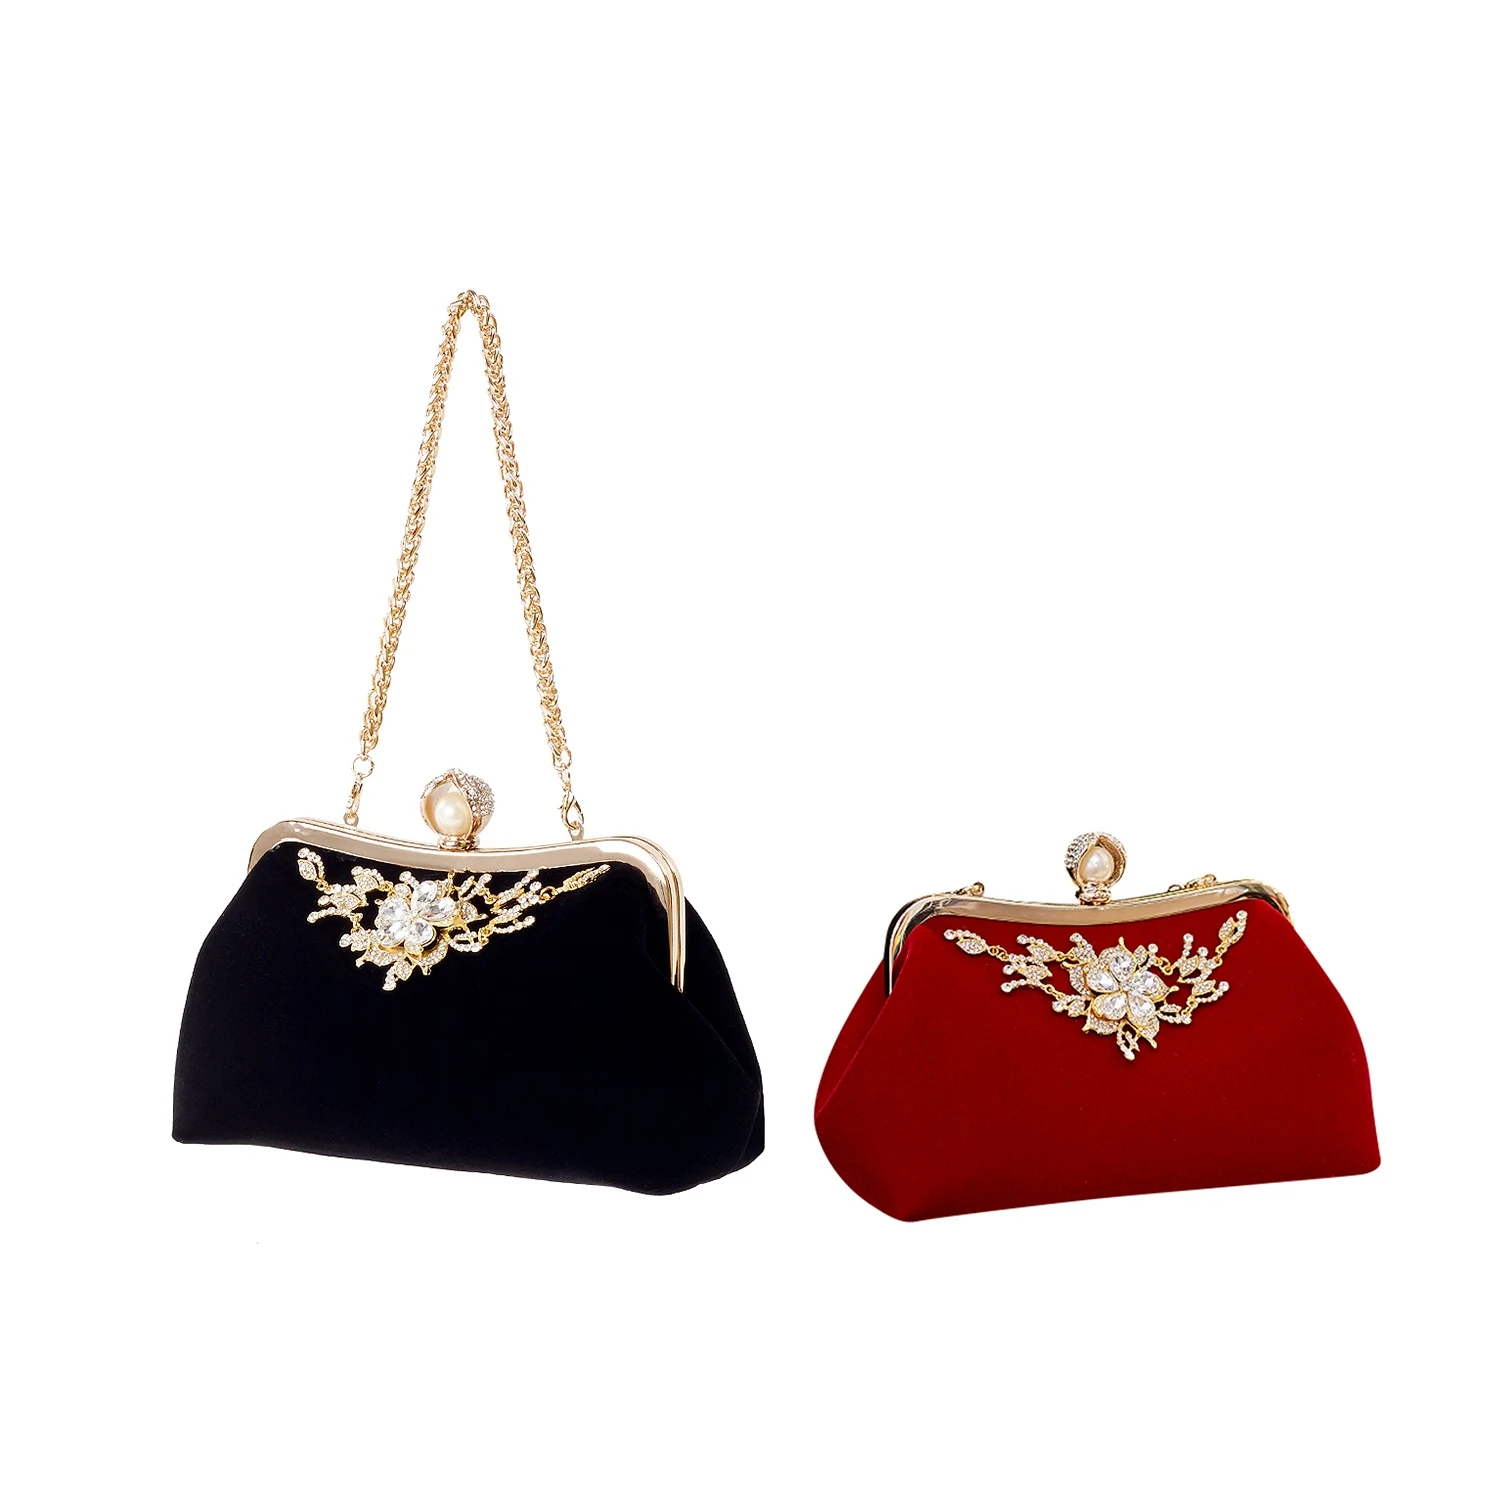 Женская сумочка с бриллиантами и жемчугом, винтажная вечерняя сумочка с хрустальным цветком, клатч для свадебной вечеринки для невесты, кошелек - черный и красный